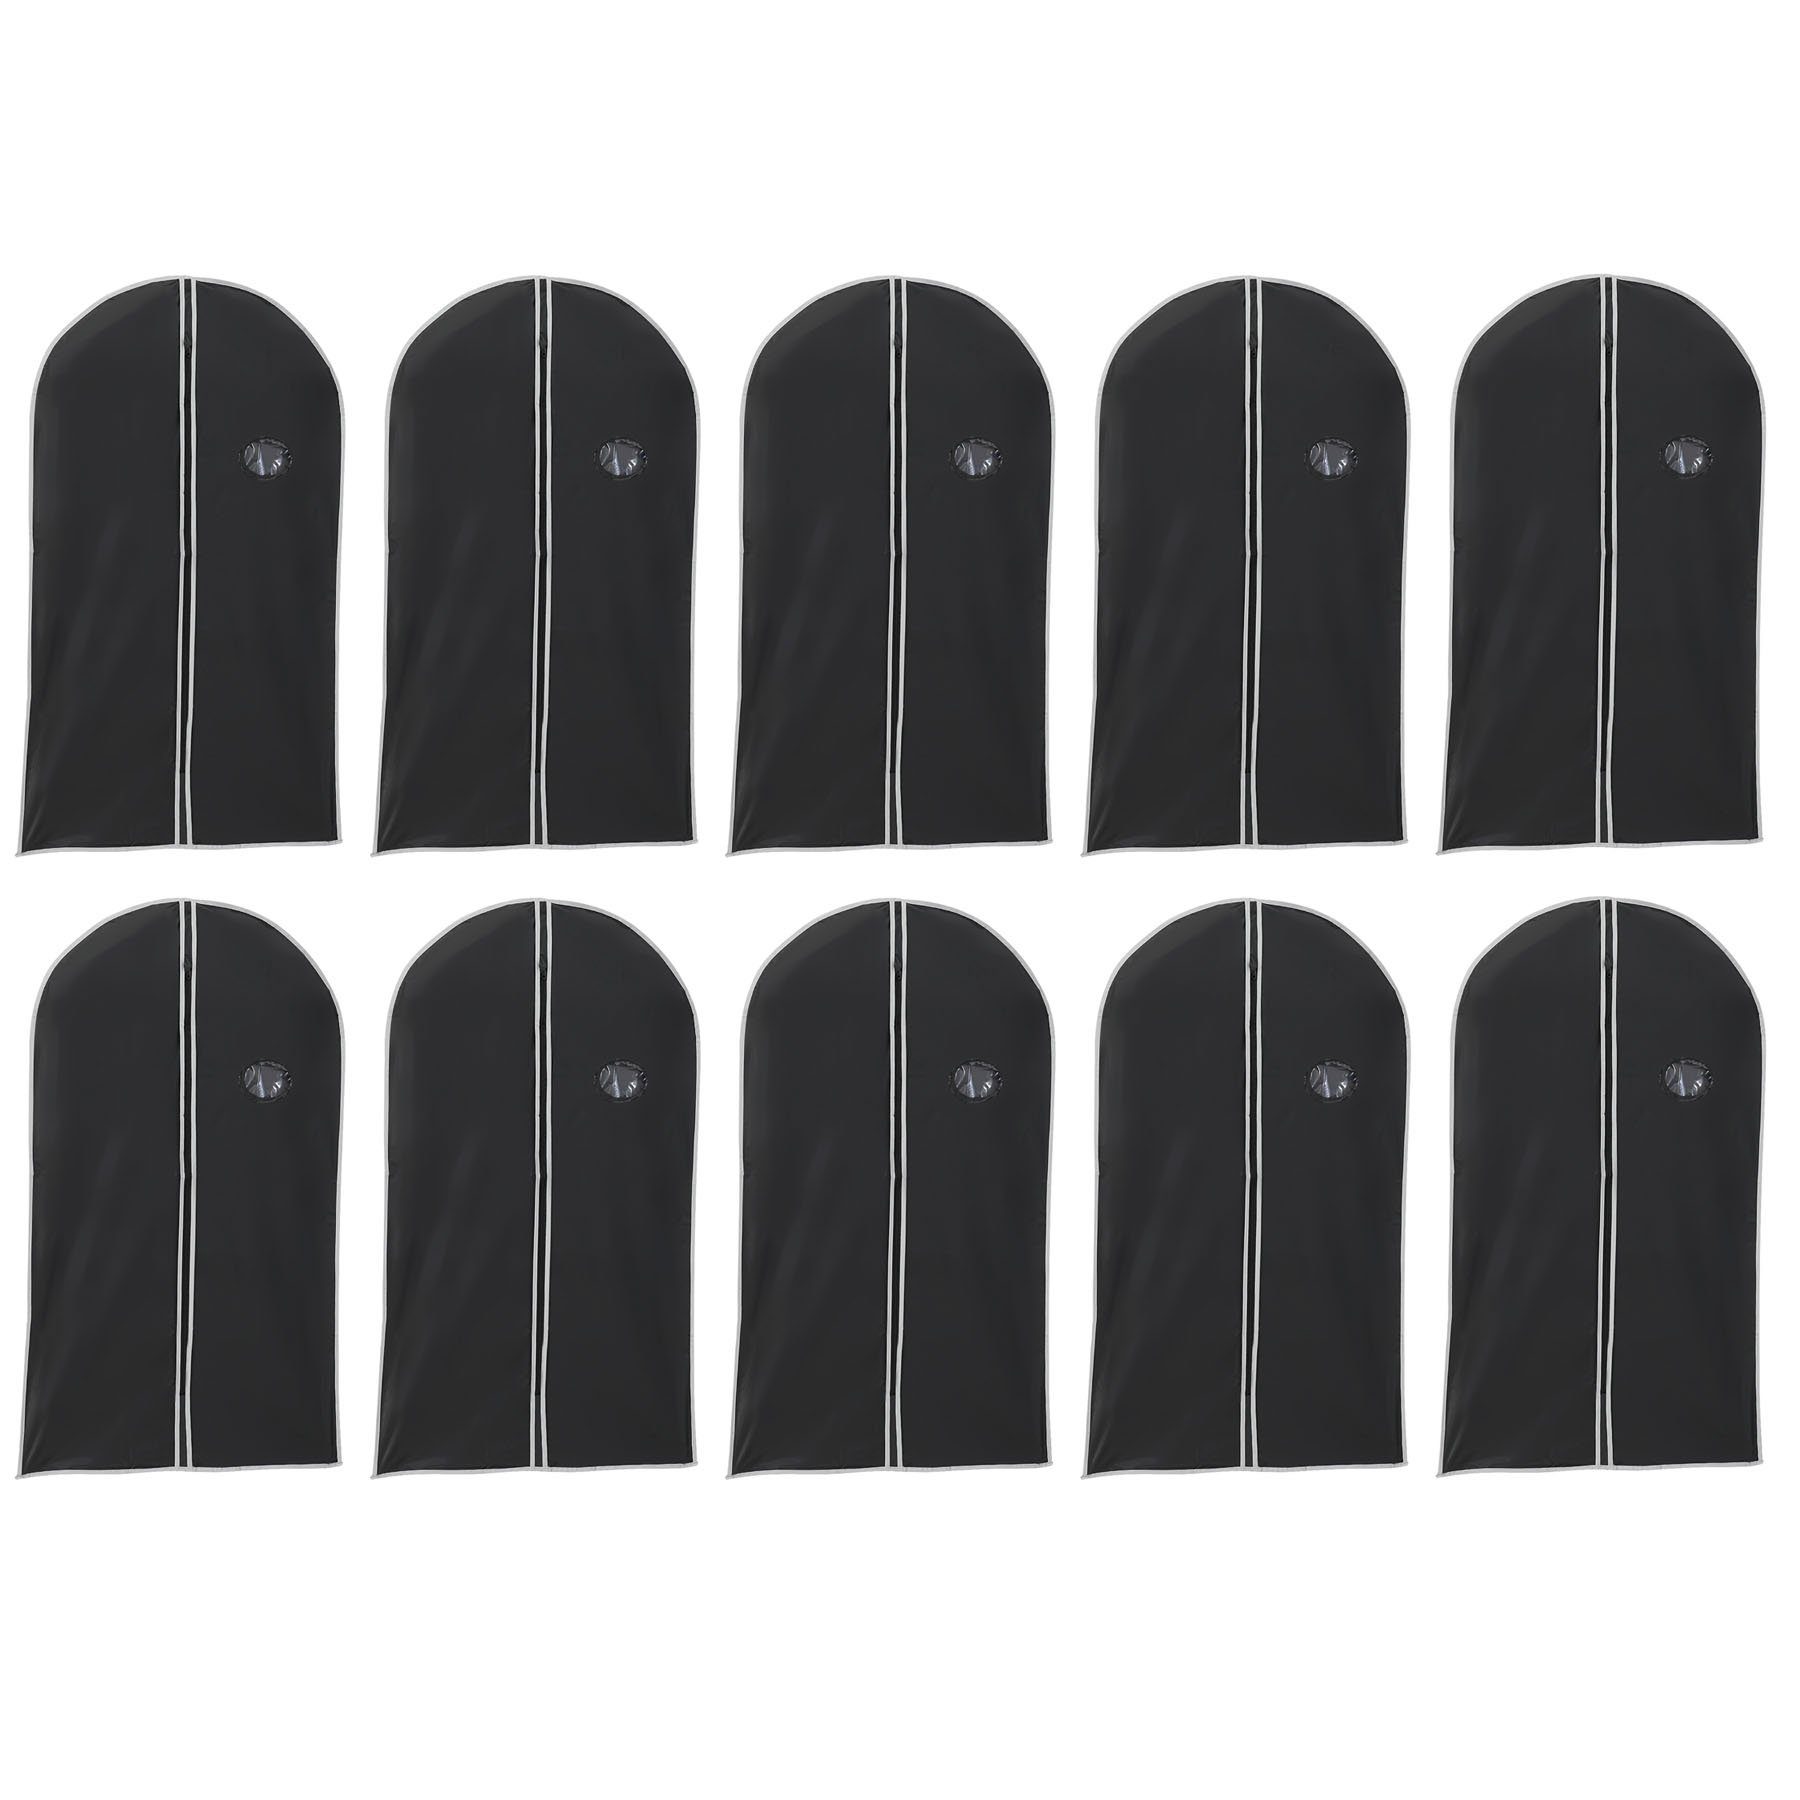 HAC24 Kleidersack Kleiderhülle Schutzhülle Kleidersack Aufbewahrungs Hülle Kleiderschutz (Set, 10 St., 100 x 60 cm) mit Reißverschluss & Sichtfenster Schutzhülle